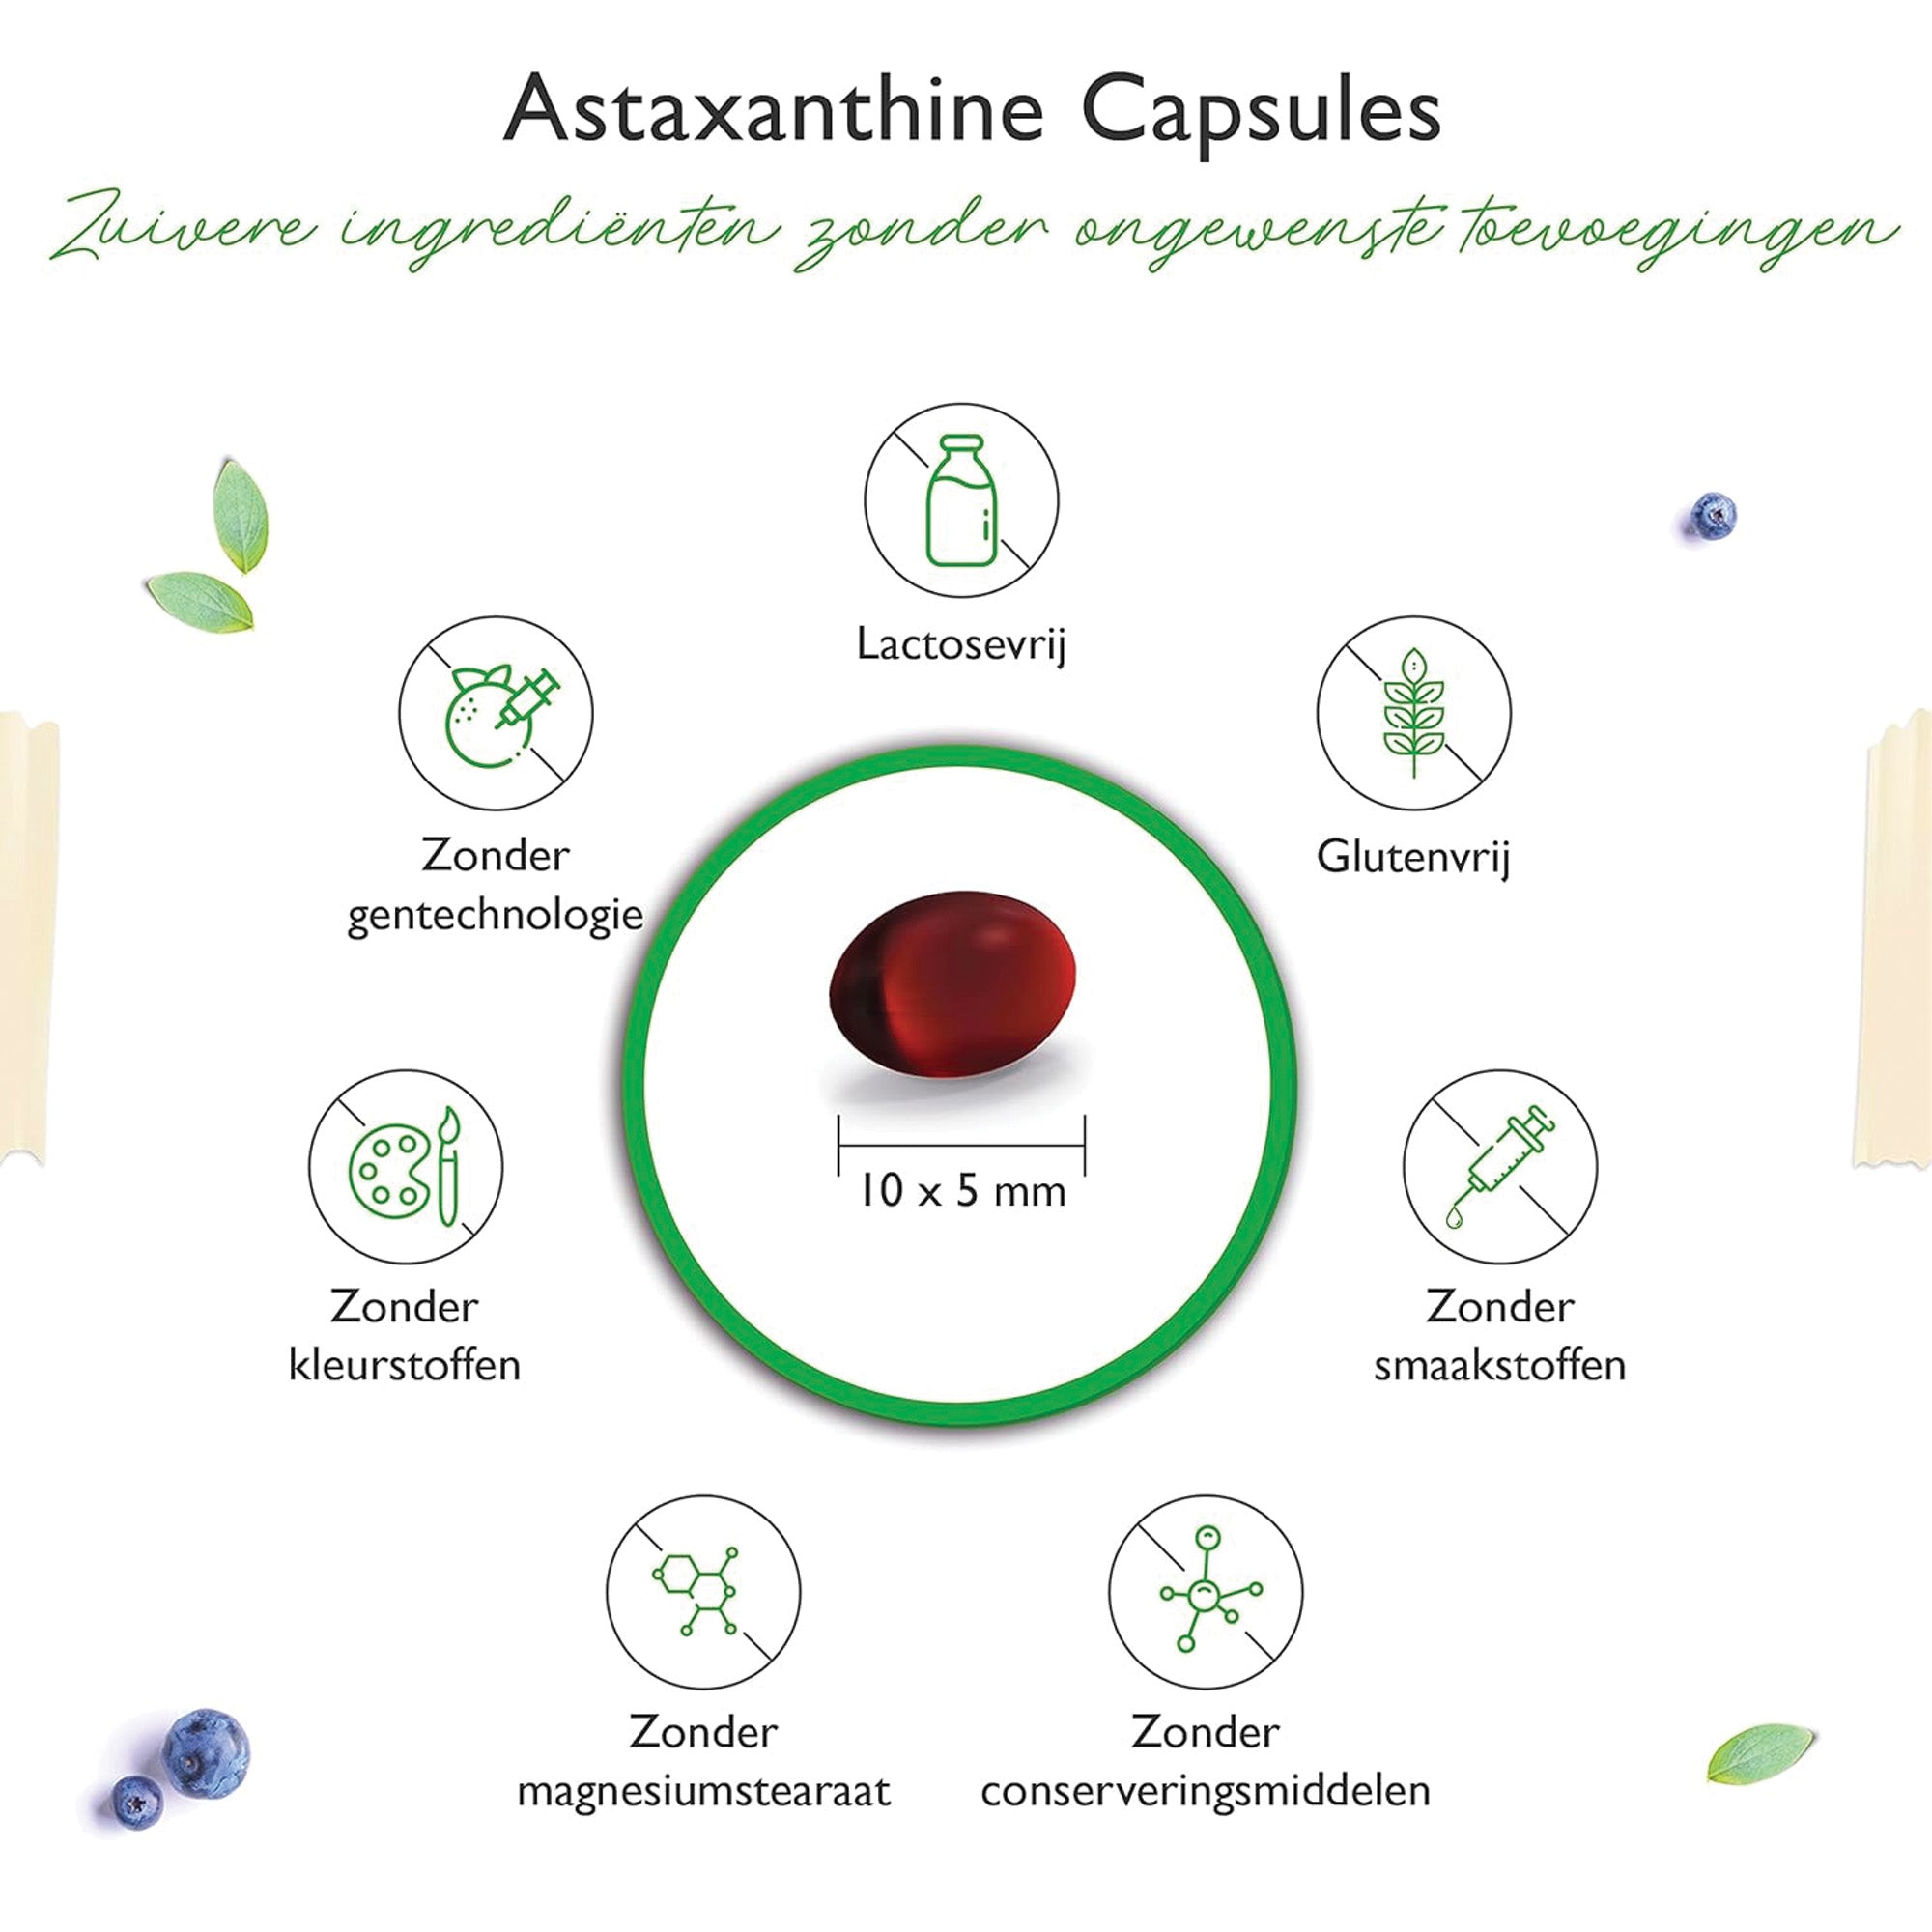 Astaxanthine | 12mg | 60 softgels | Vitamine e | Vit4ever